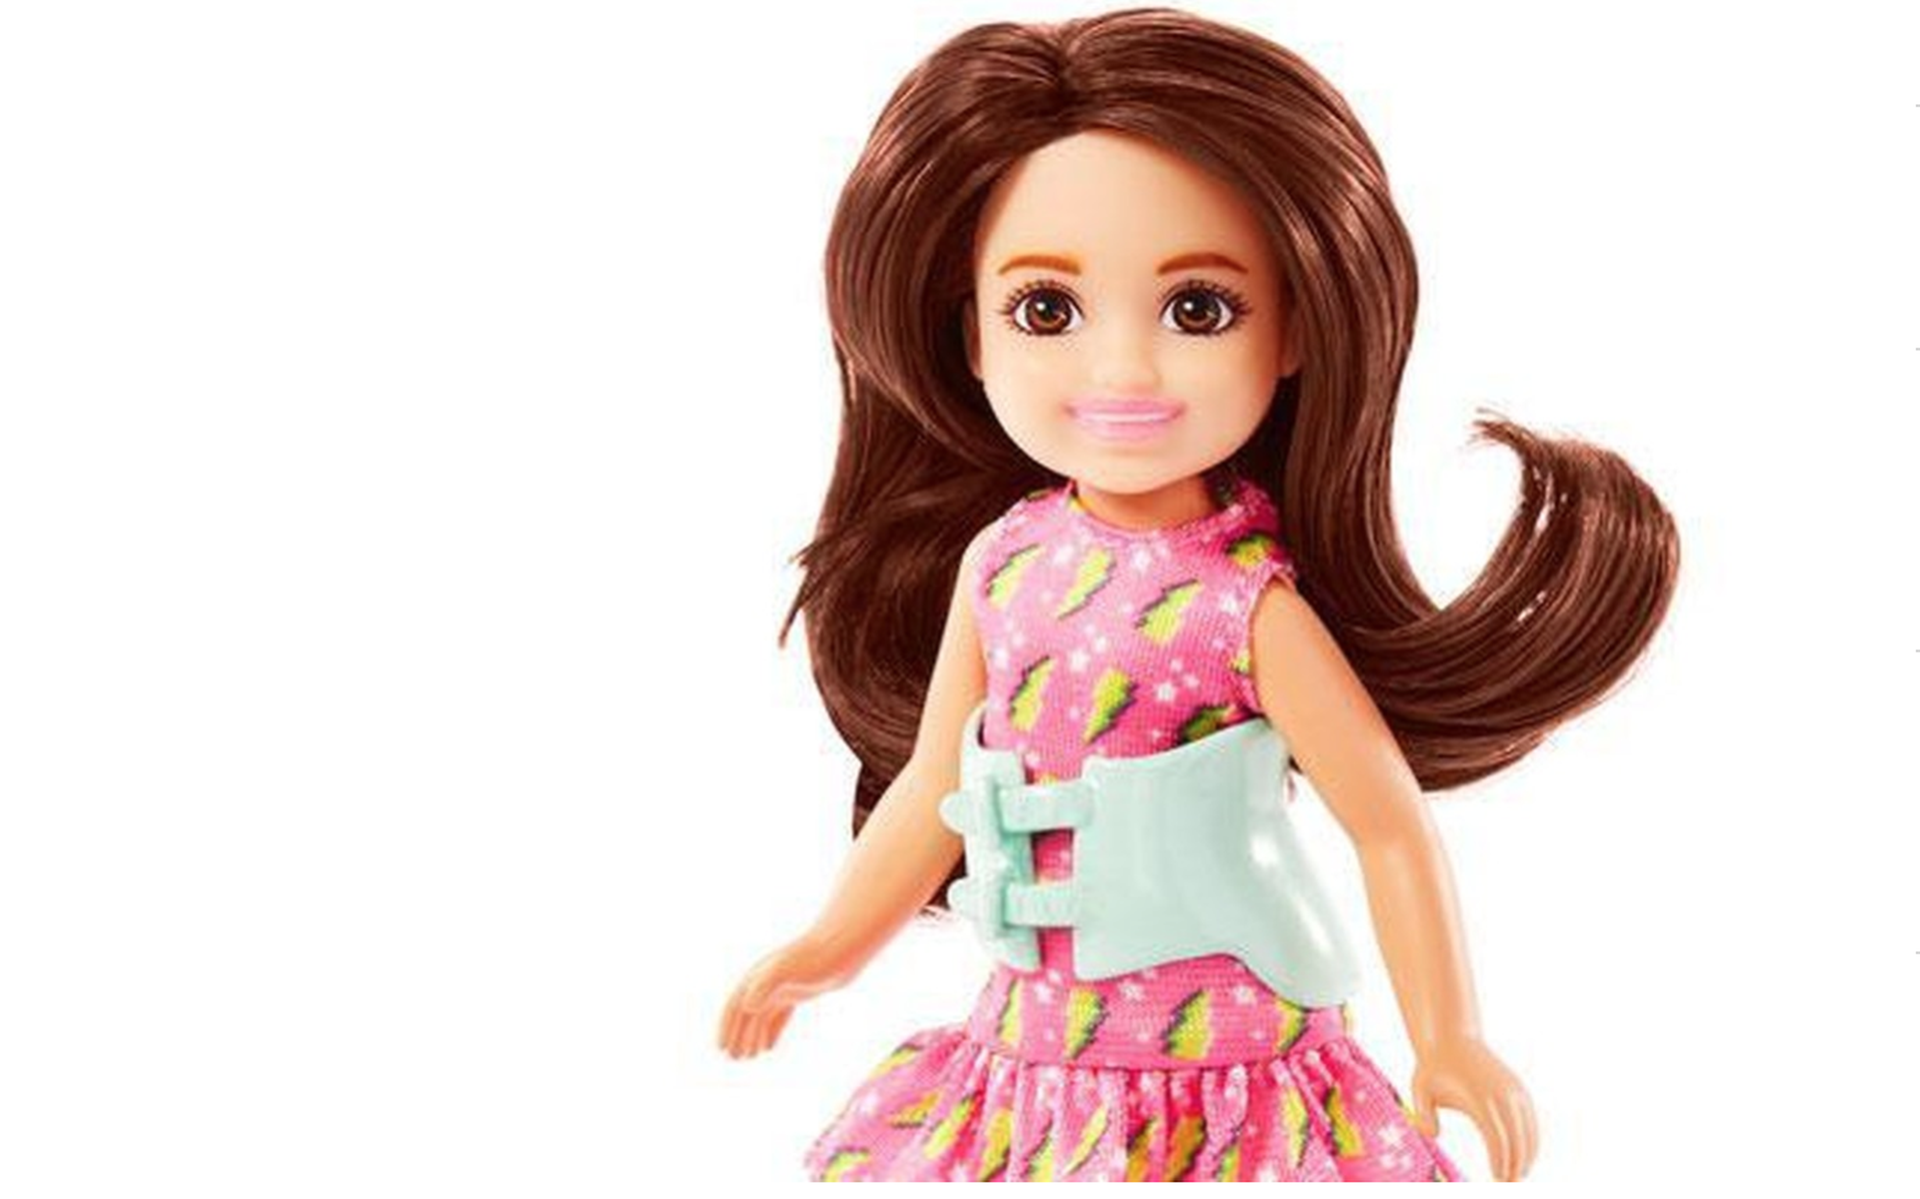 Langskomen weekend binair Mattel komt met een barbiepop met scoliose - Dagblad van het Noorden